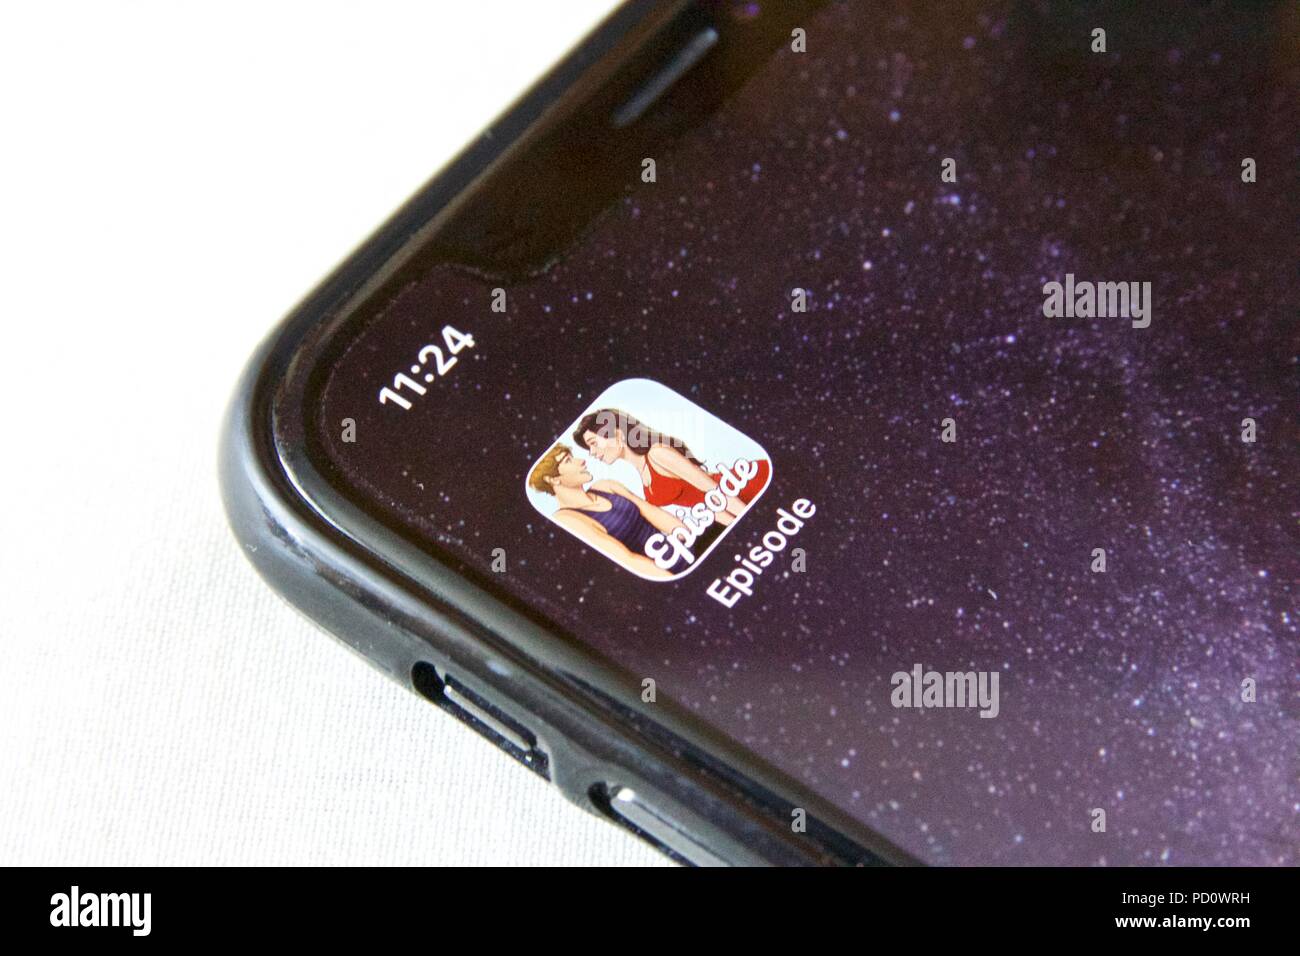 Die App Symbol für interaktive Geschichte Spiel 'Episode - ihre Geschichte" von Pocket Edelsteine zu wählen, auf einem iPhone X vor einem weißen Hintergrund Stockfoto